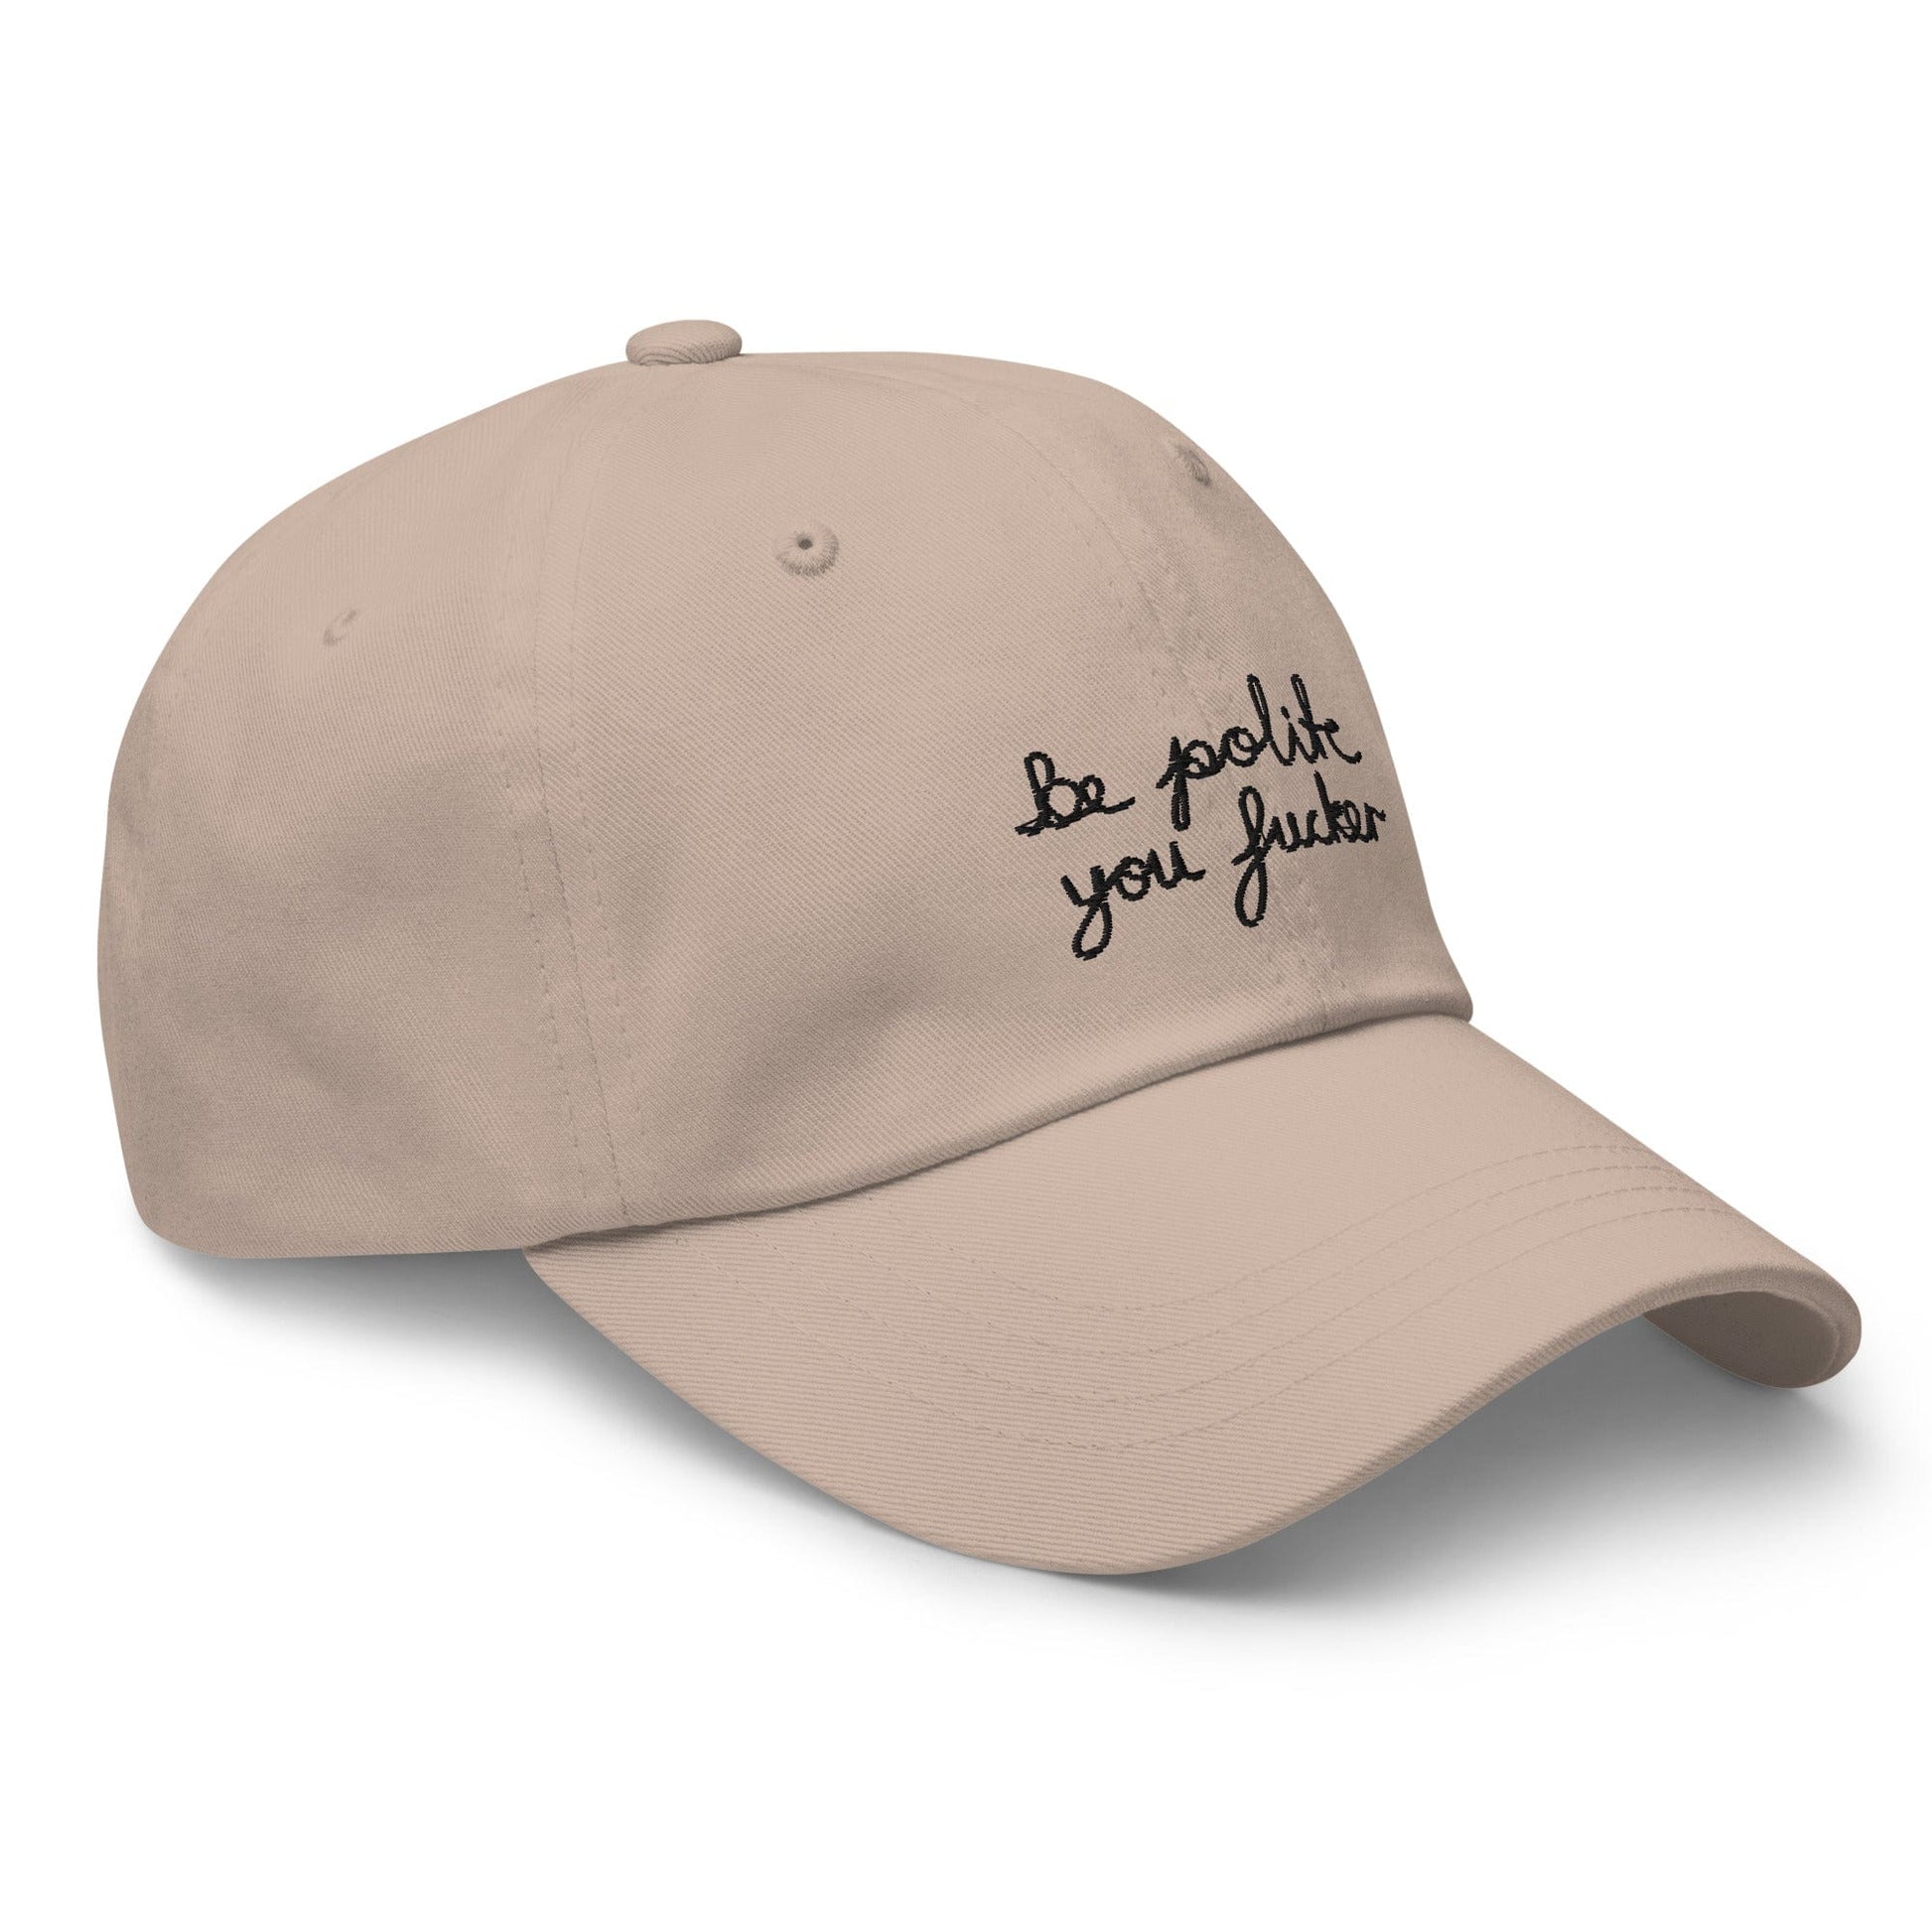 VAGPWR Be polite - Dad hat